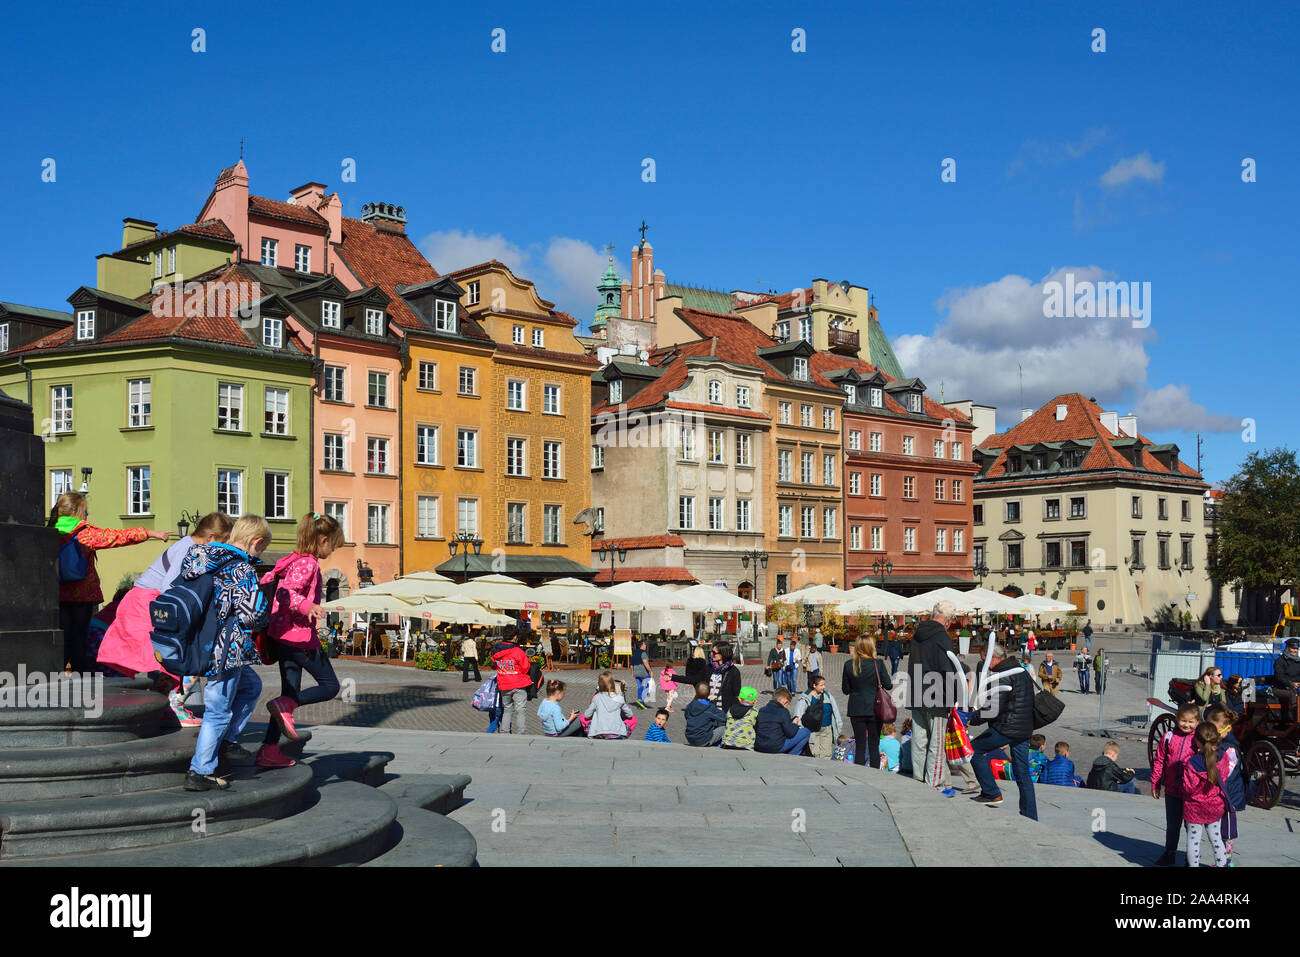 Zamkowi square, l'entrée principale de la Vieille Ville (Stare Miasto) de Varsovie, Site du patrimoine mondial de l'Unesco. Pologne Banque D'Images